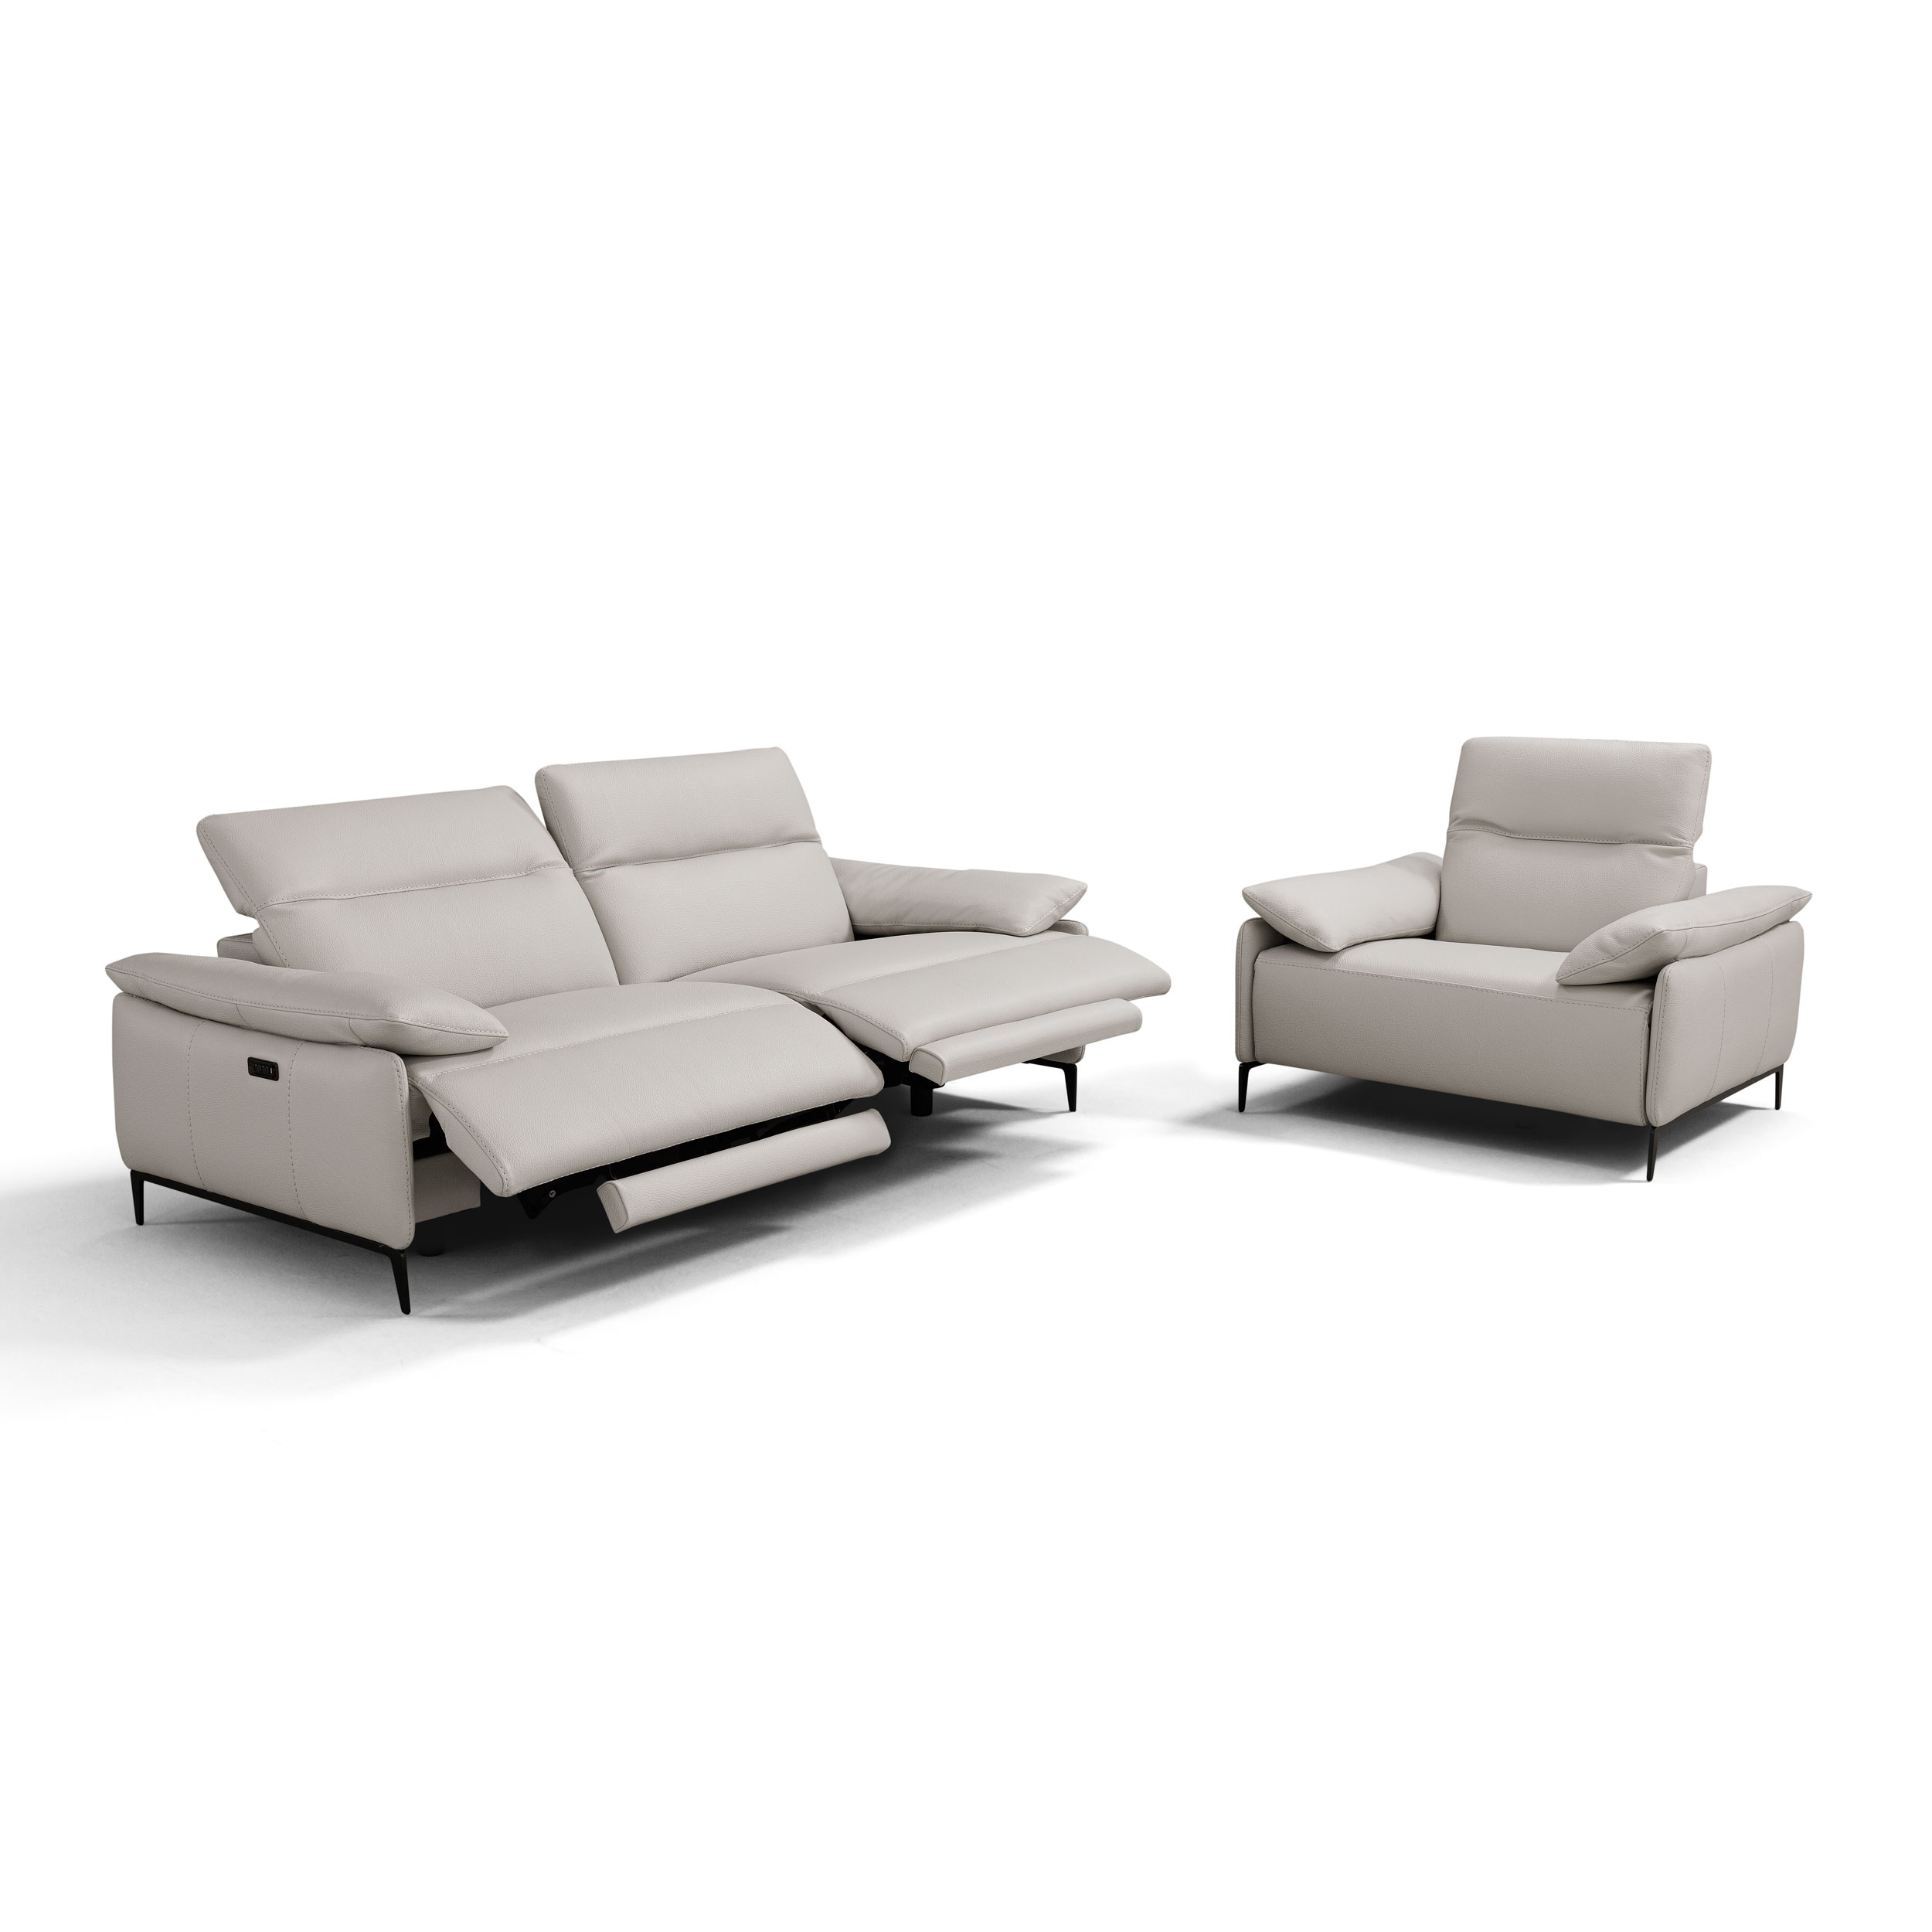 i845 Italian sofa & recliner, each sold individually